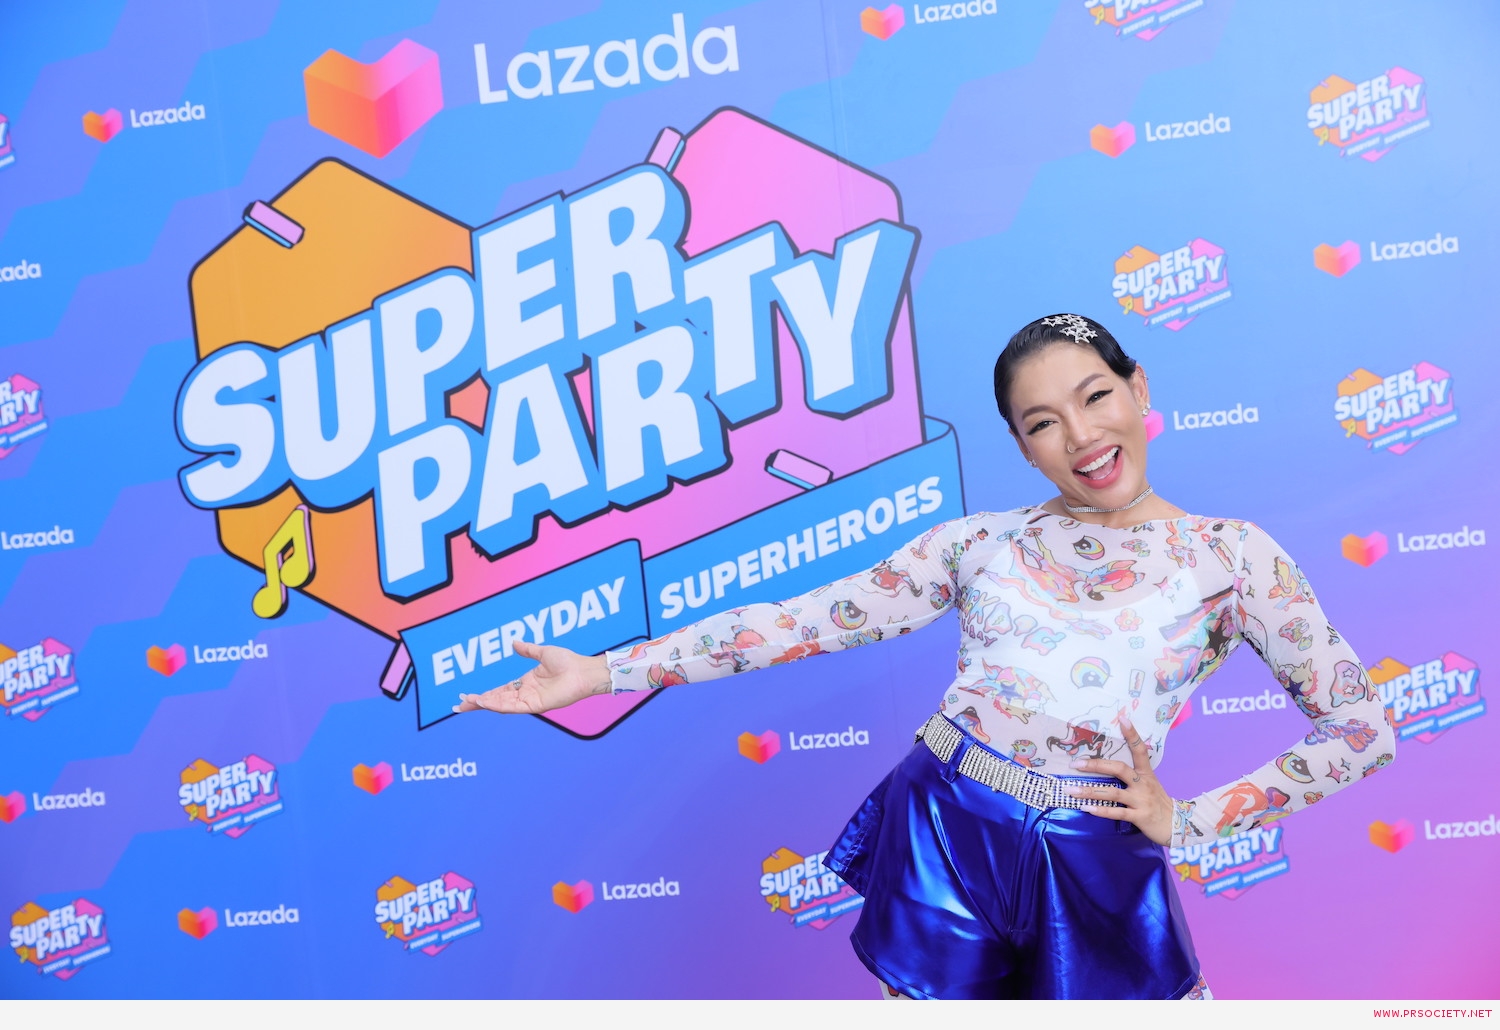 Da_Lazada Super Party (2)